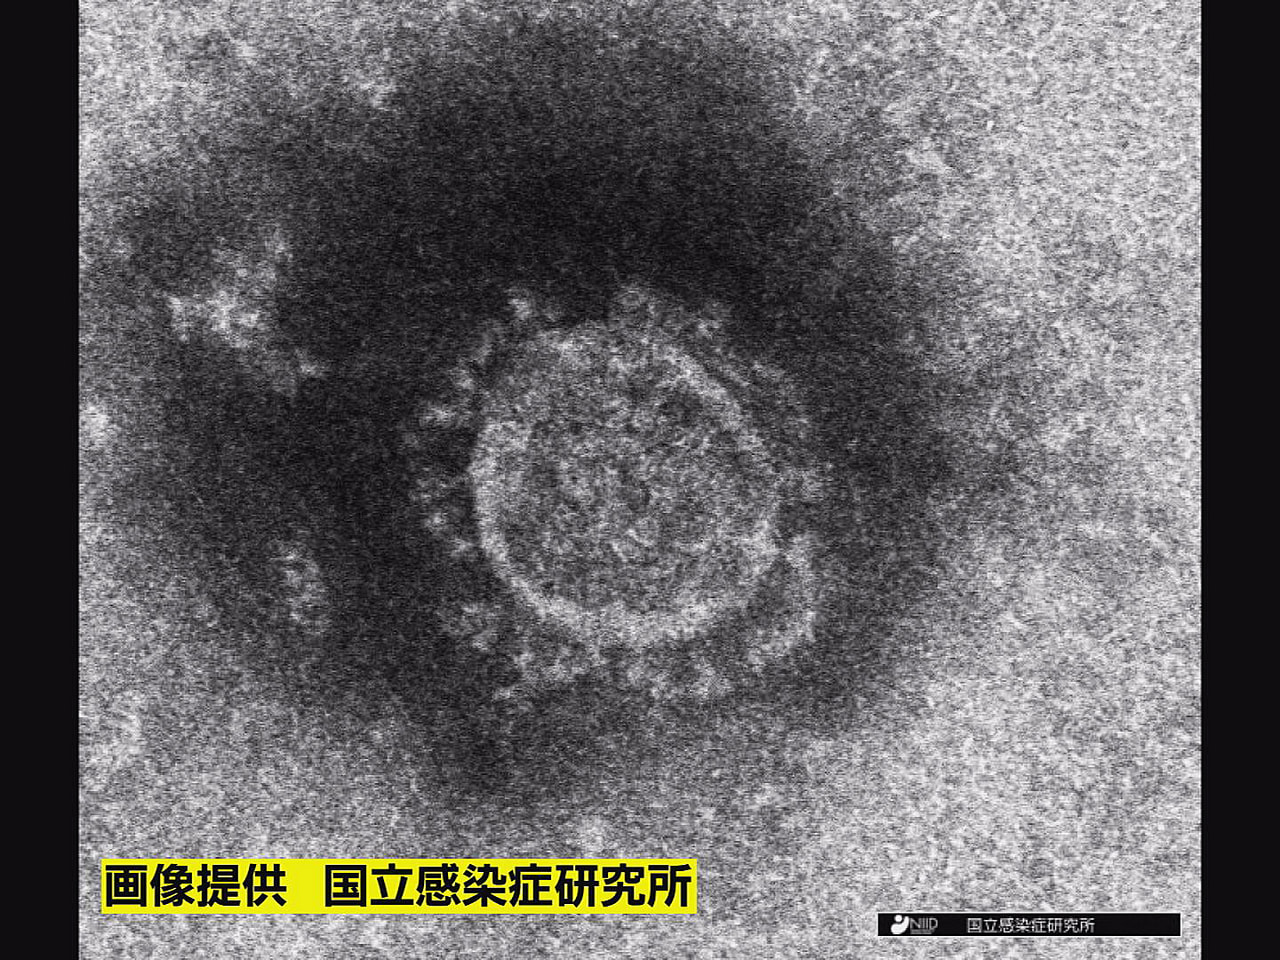 岐阜県は１０日、新型コロナウイルスの新規感染者が２７５人確認されたと発表しました...